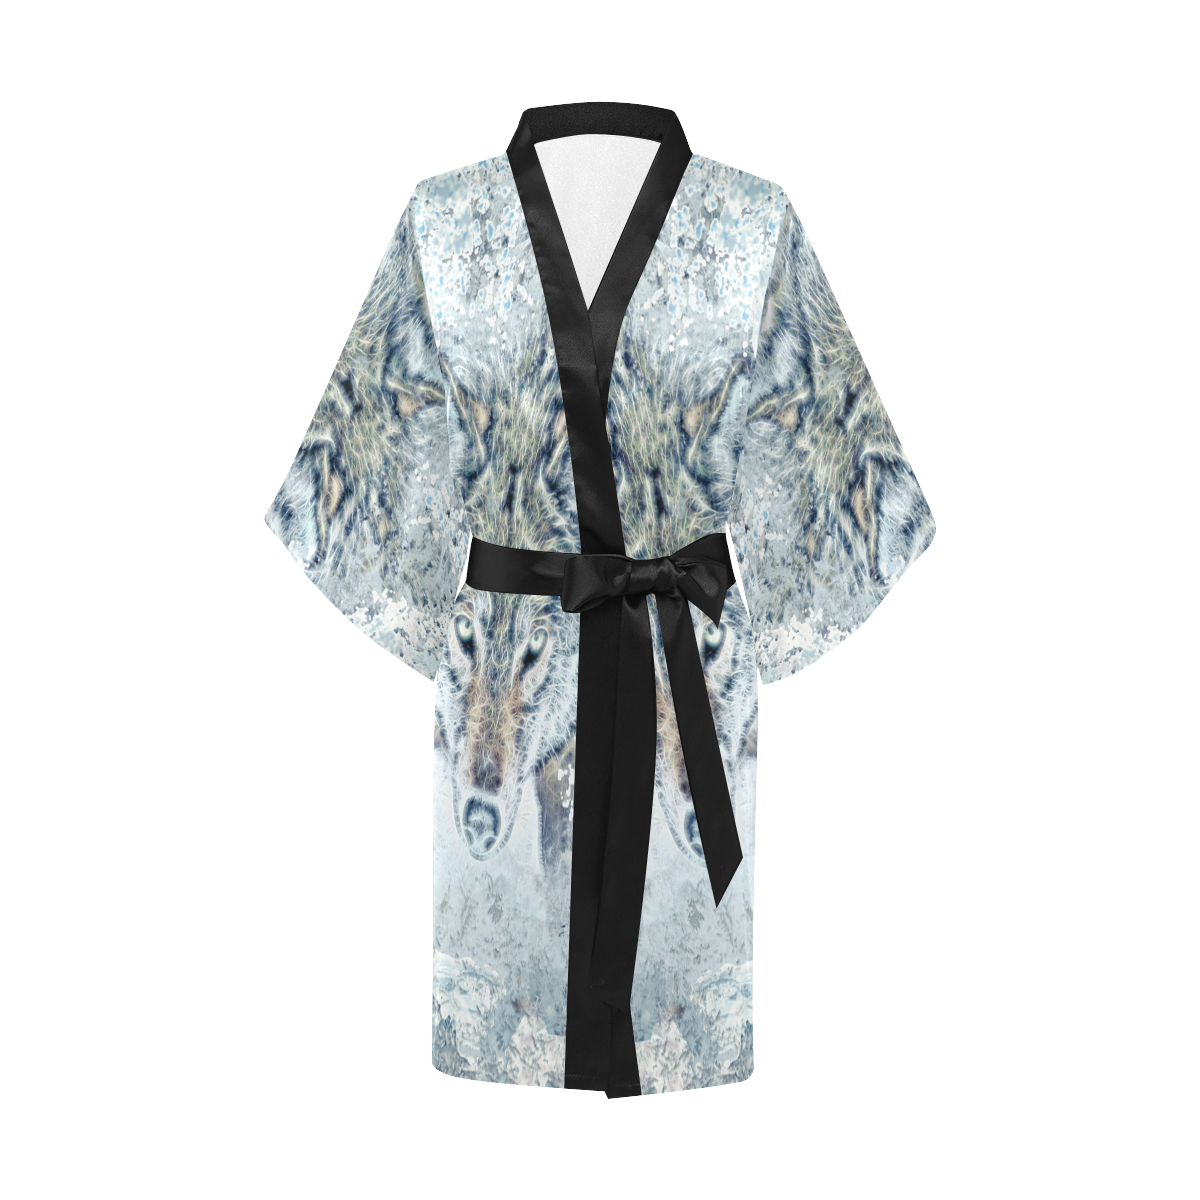 Snow Wolf Kimono Robe